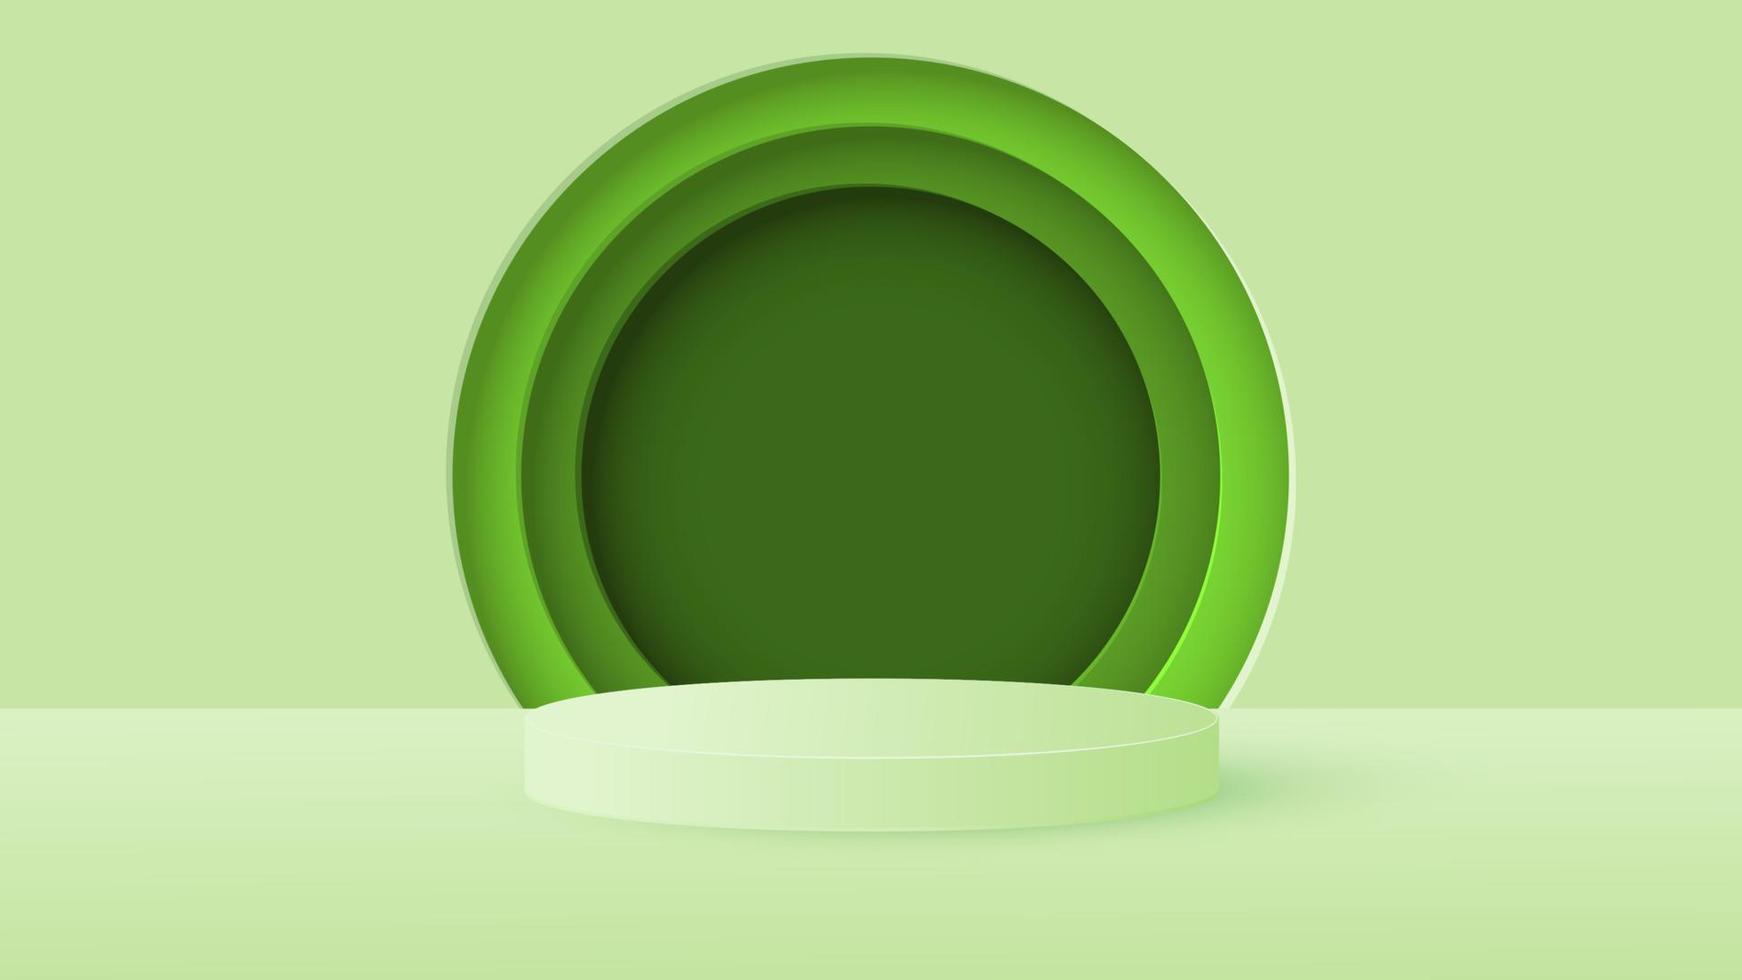 minimale scène met een groen cilindrisch podium en een rond frame in groene tinten. podium voor productdemonstratie, showcase. vector illustratie